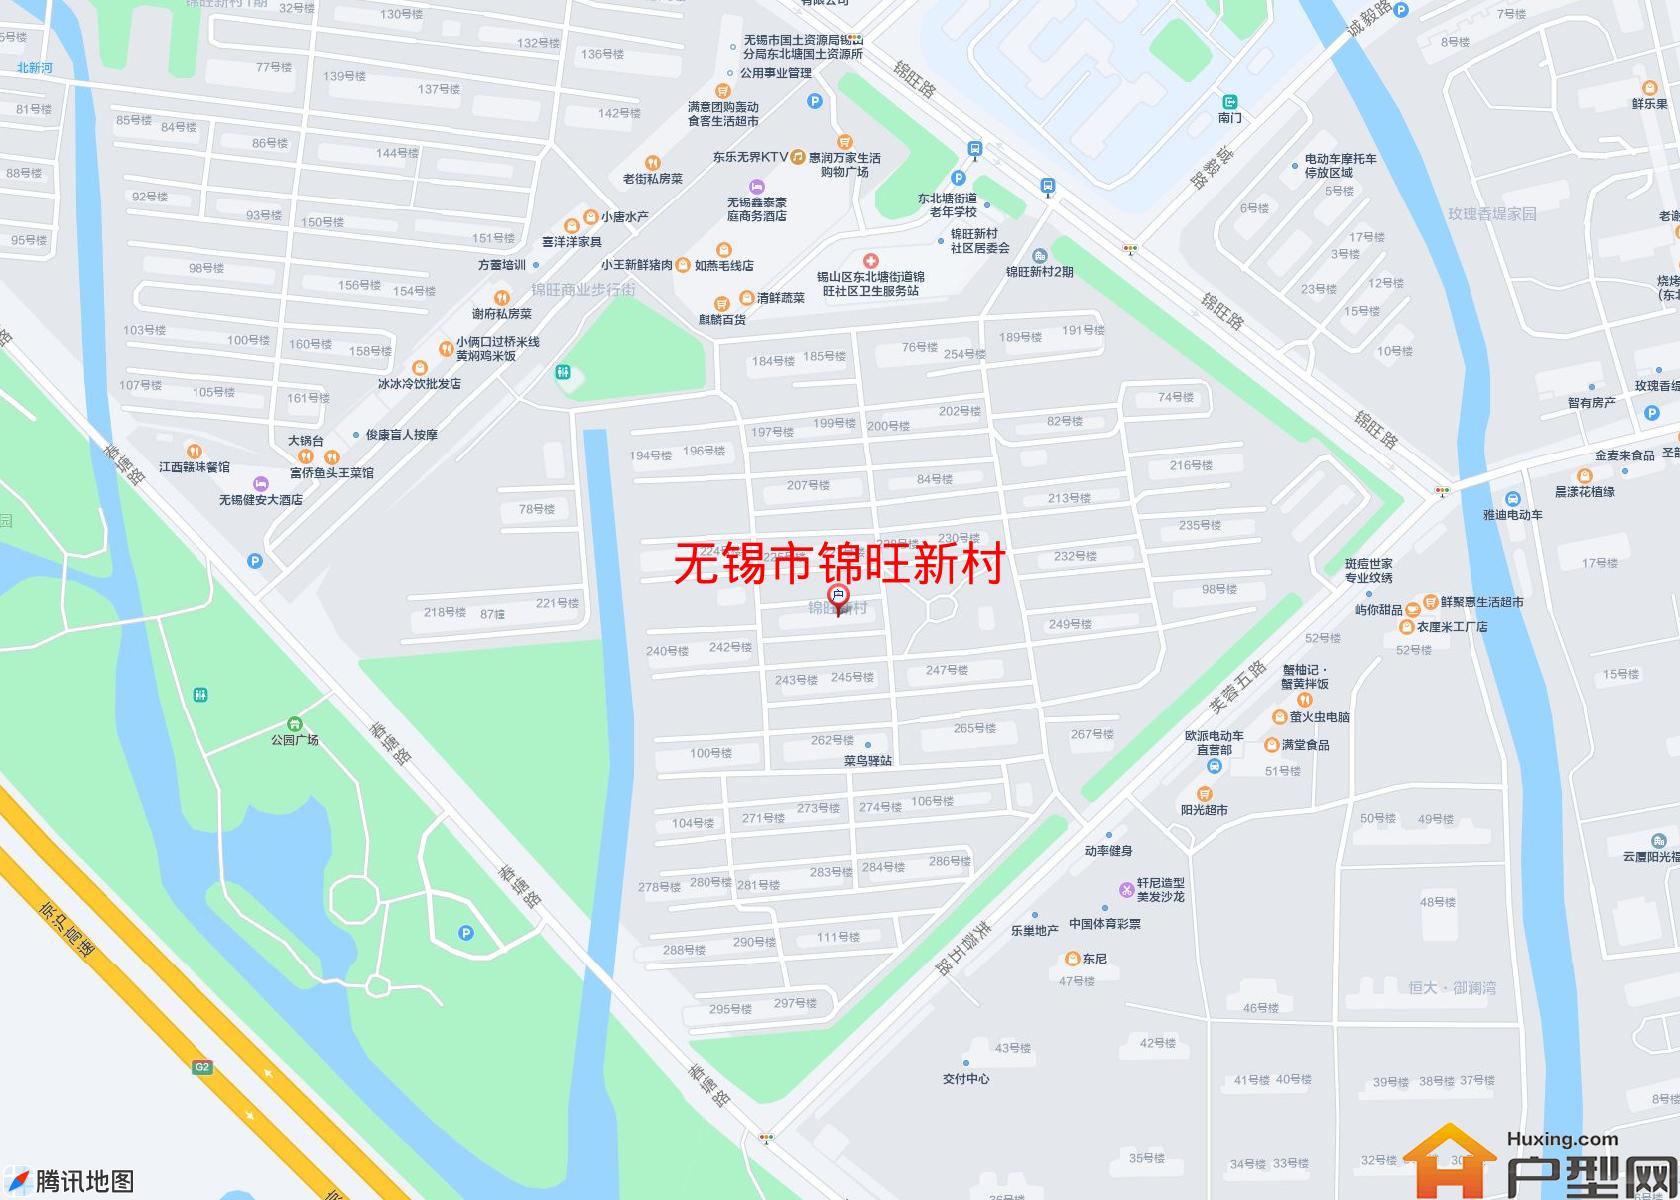 锦旺新村小区 - 户型网